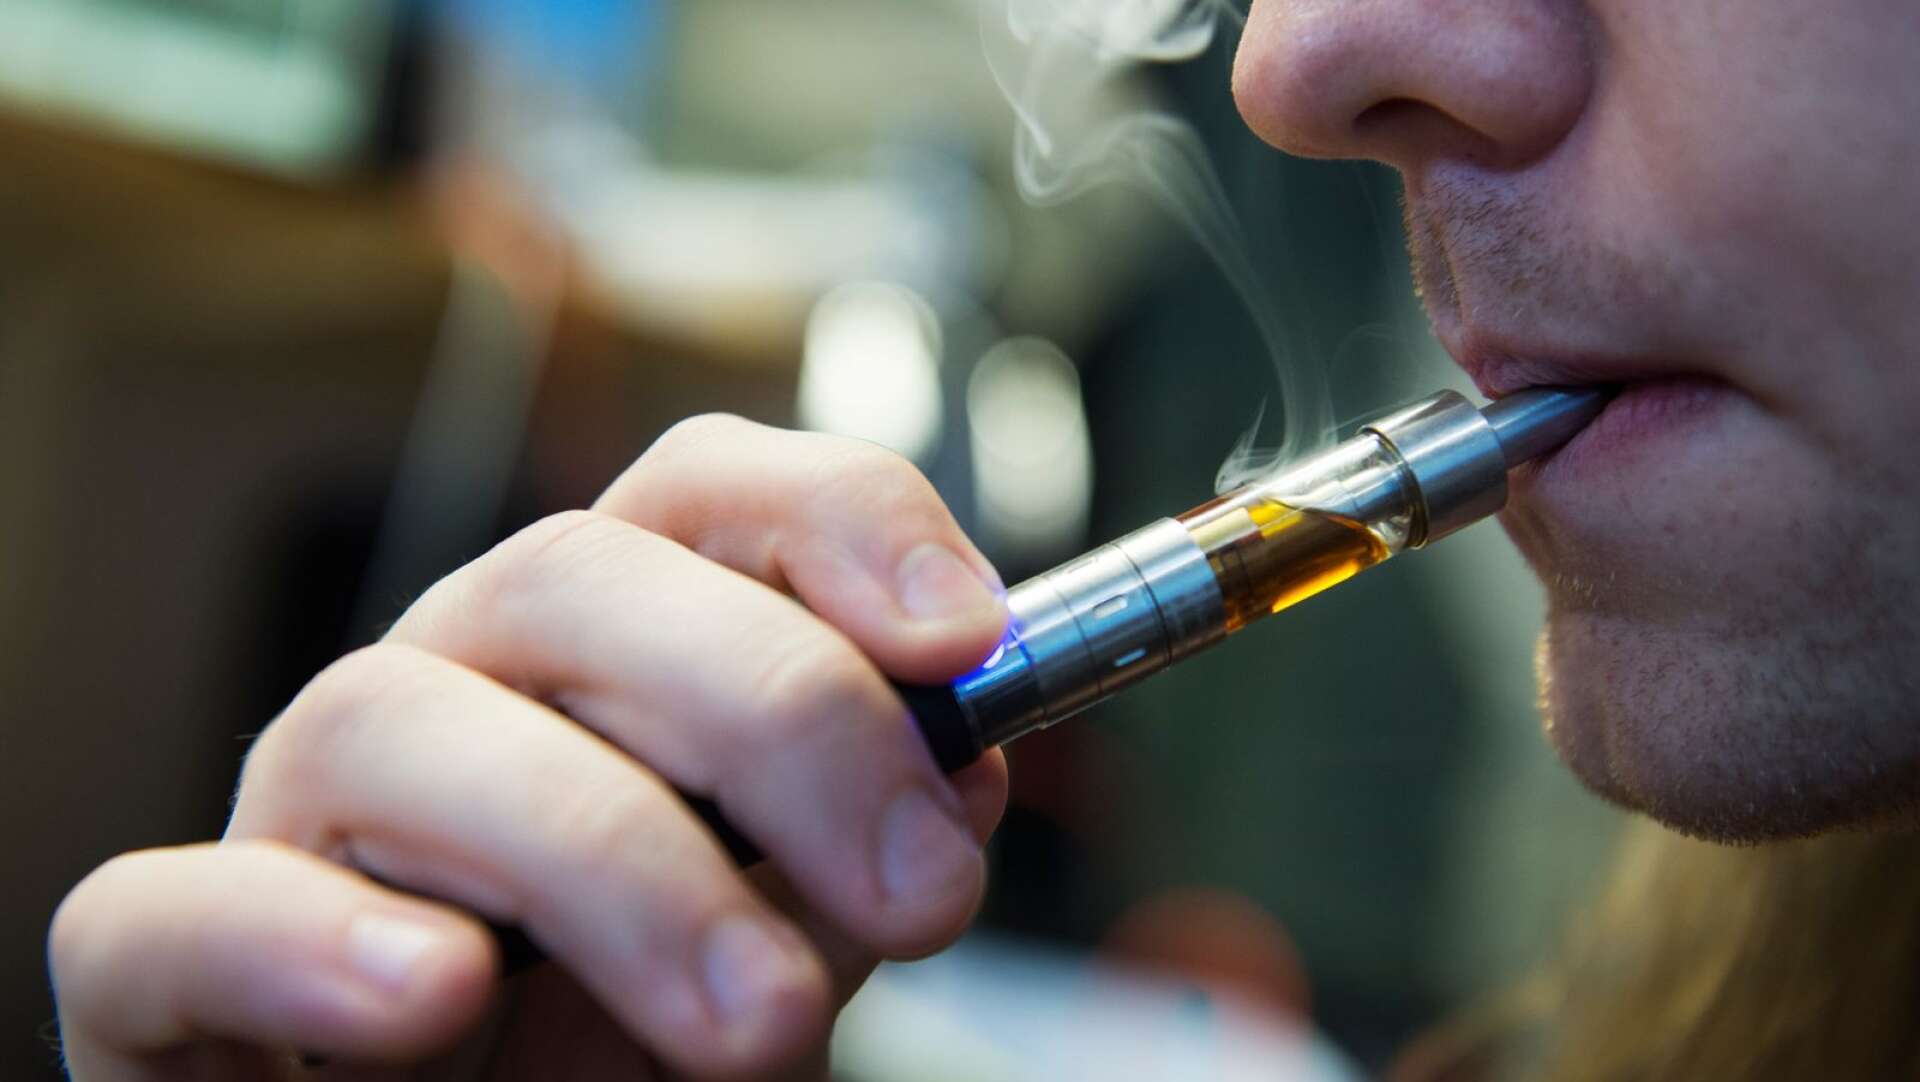 Många uppger att tillgången till goda e-cigaretter gör det lättare att hålla sig bort från vanliga cigaretter, skriver Daniel Åkerman.